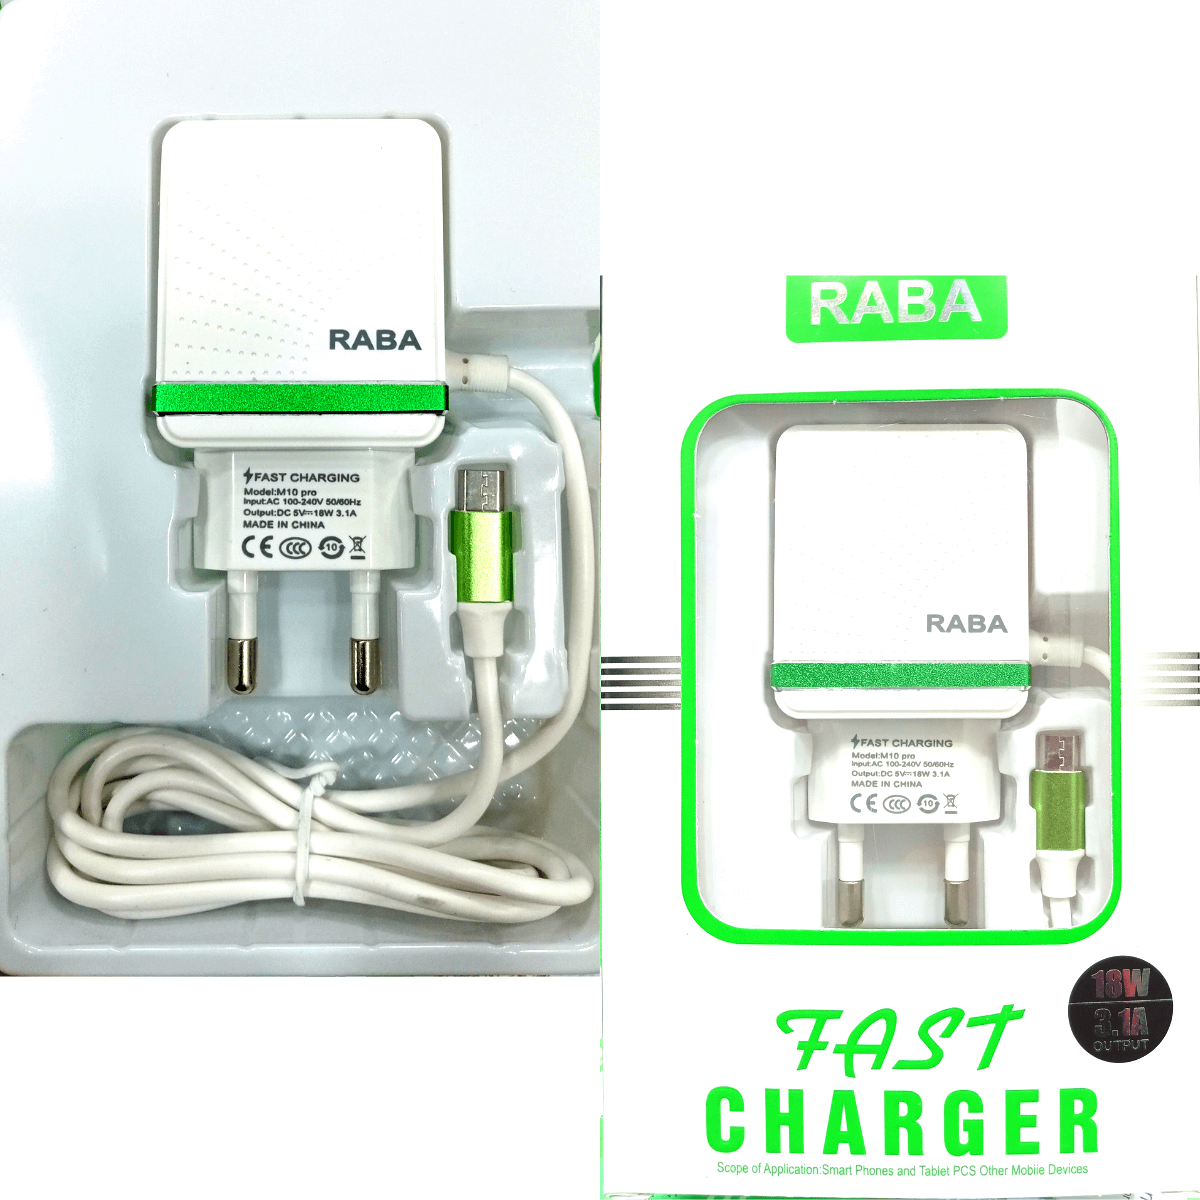 RABA M10 Pro 3.1A 18watt Type-B Fast Charger